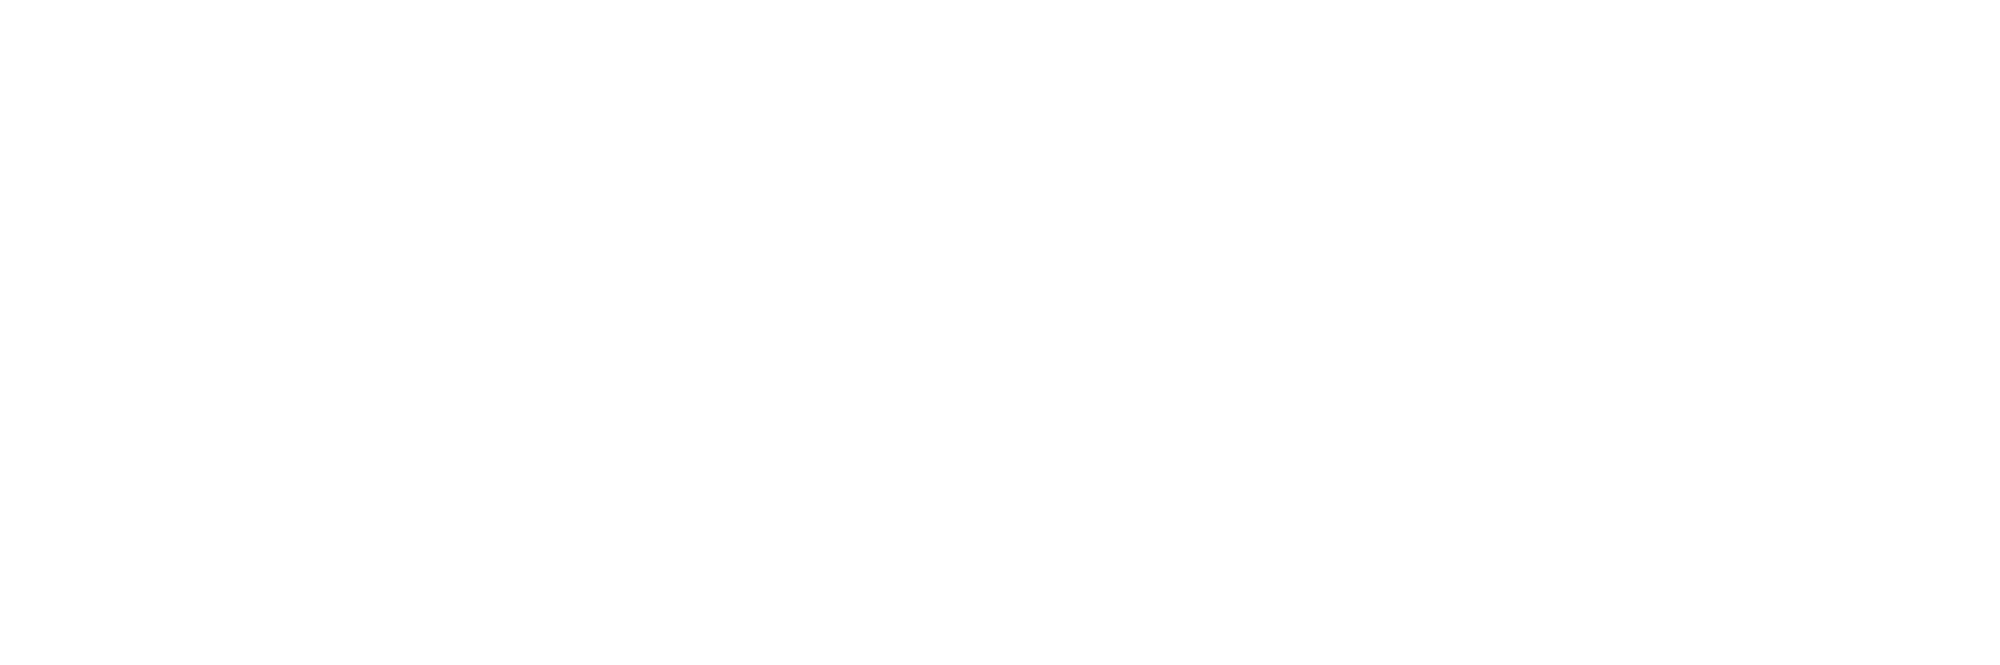 MetaShape logo White-01